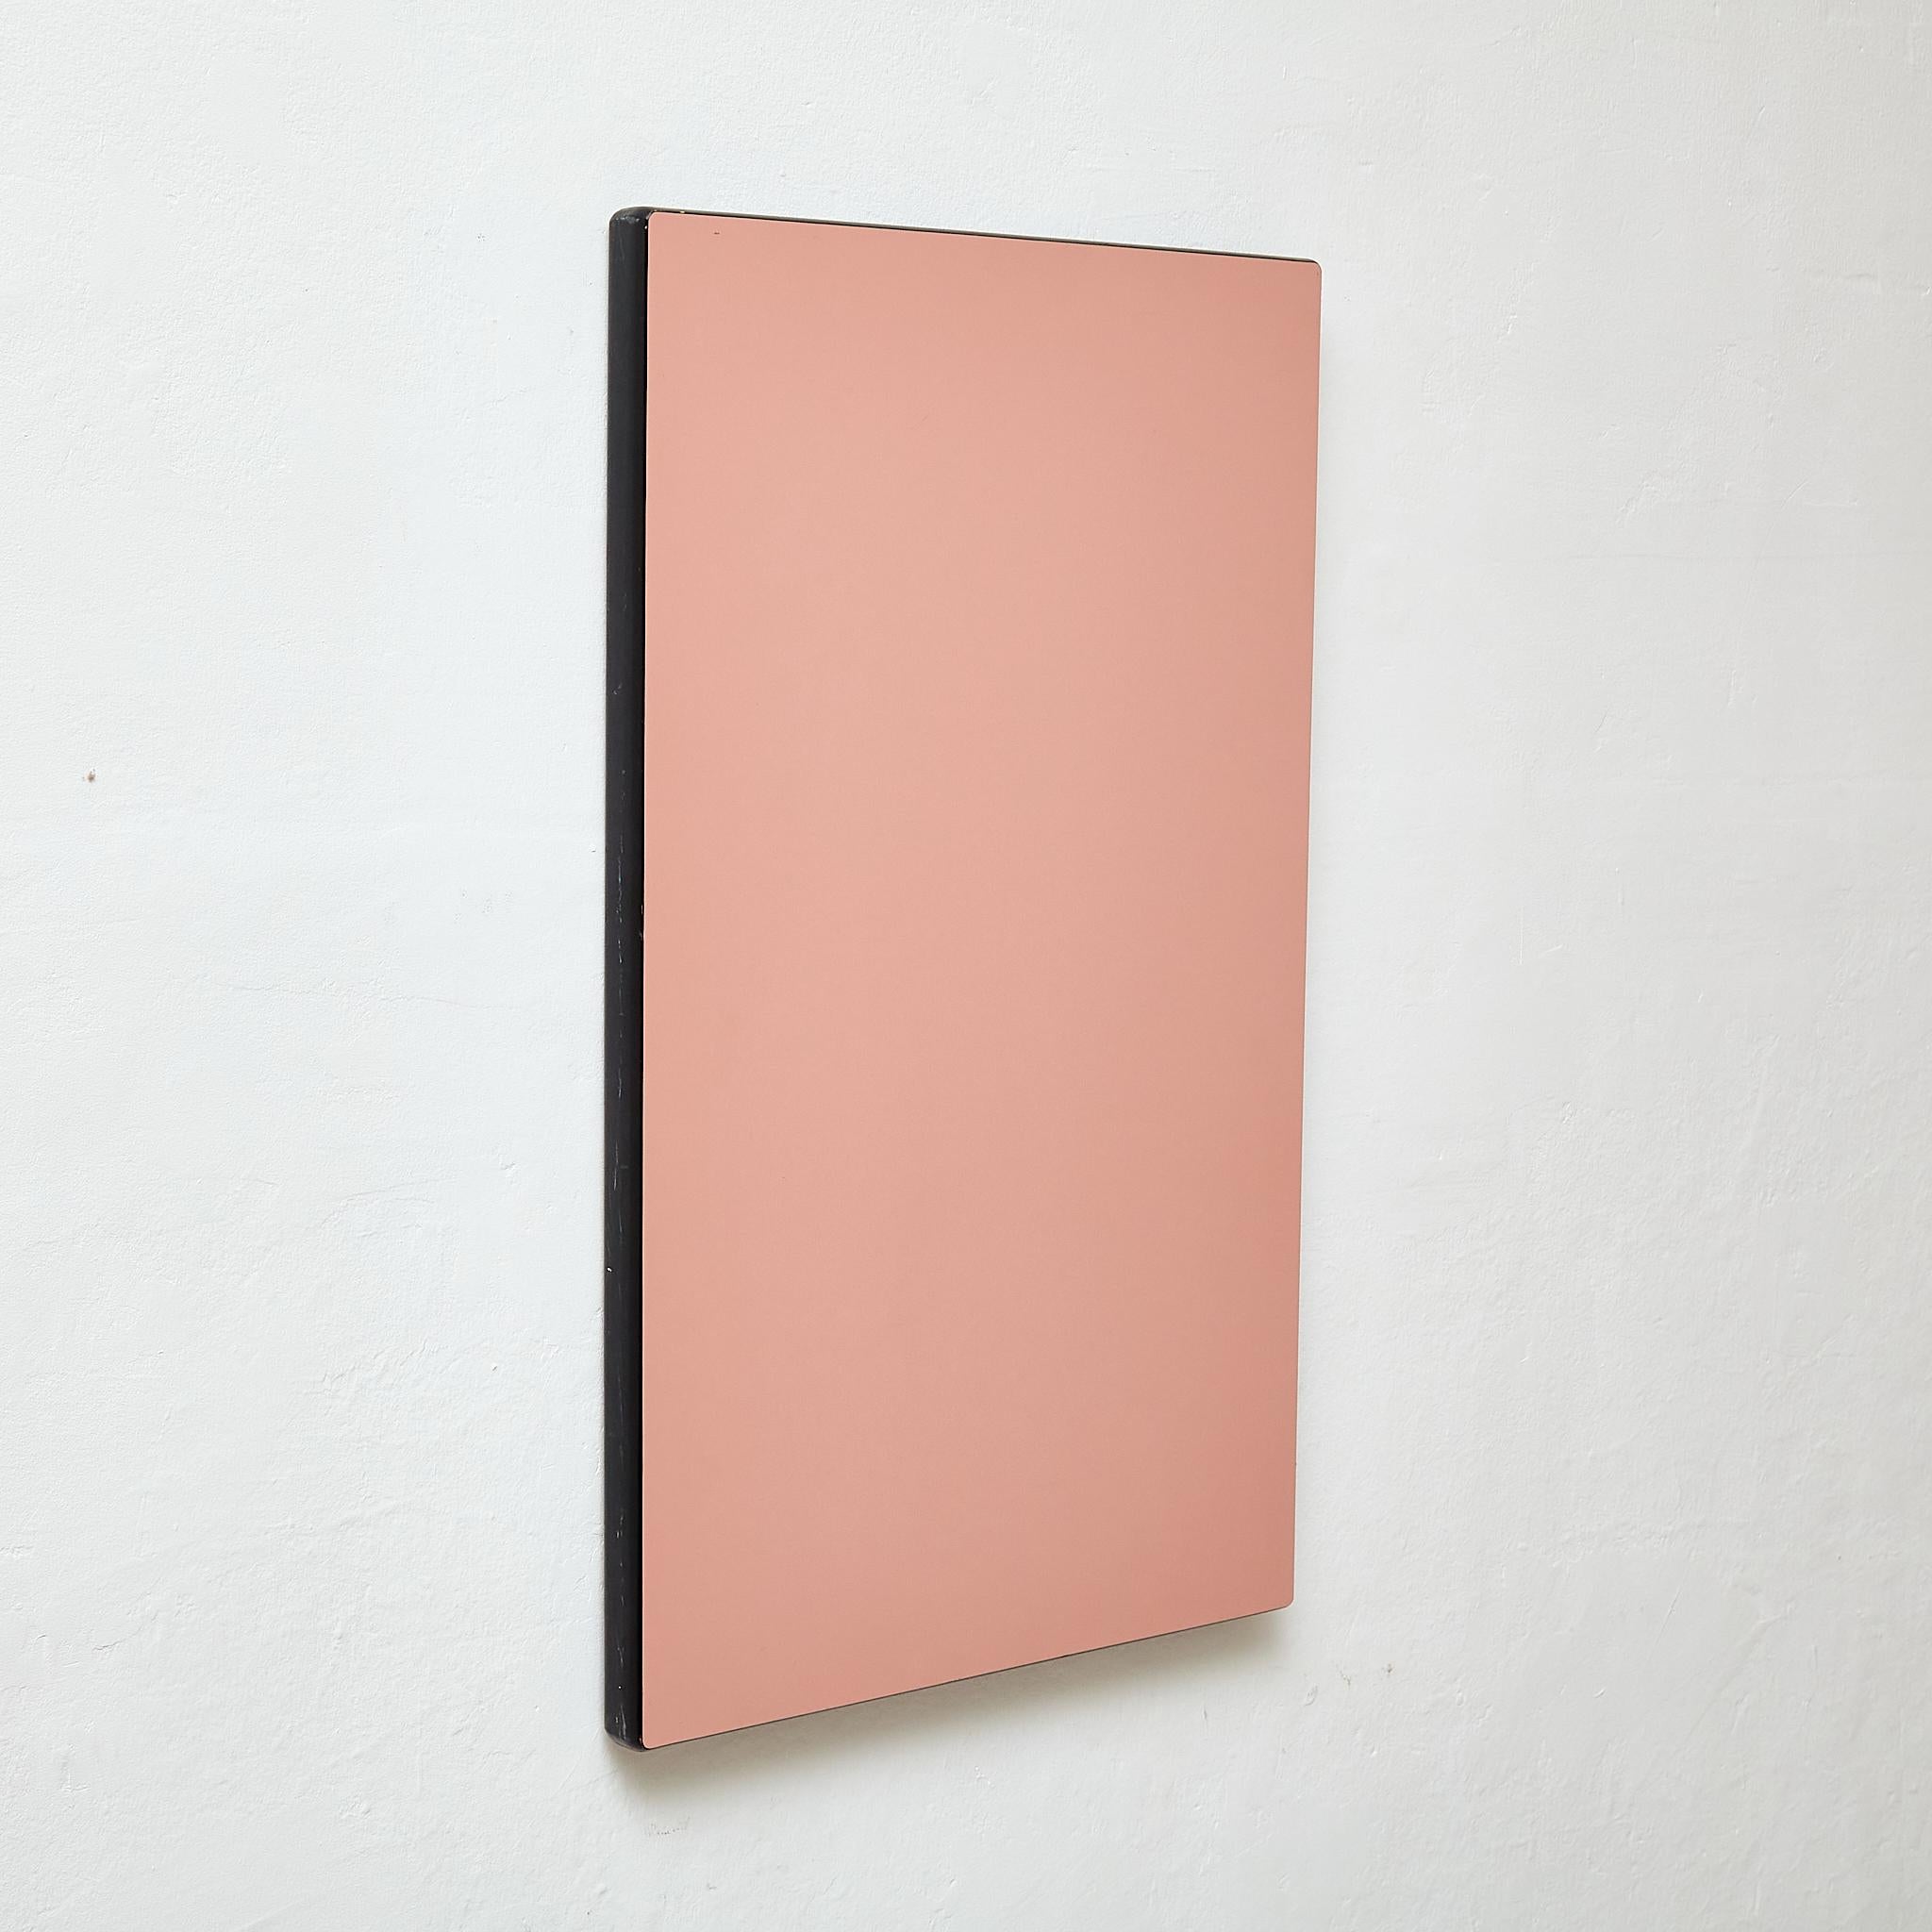 Dieses zeitgenössische Kunstwerk von Sandro ist ein atemberaubendes Werk, das ein wunderschönes rosa monochromes Farbschema zeigt. Mit seinem minimalistischen Design strahlt dieses Kunstwerk ein Gefühl von Schlichtheit und Eleganz aus. Das aus Holz